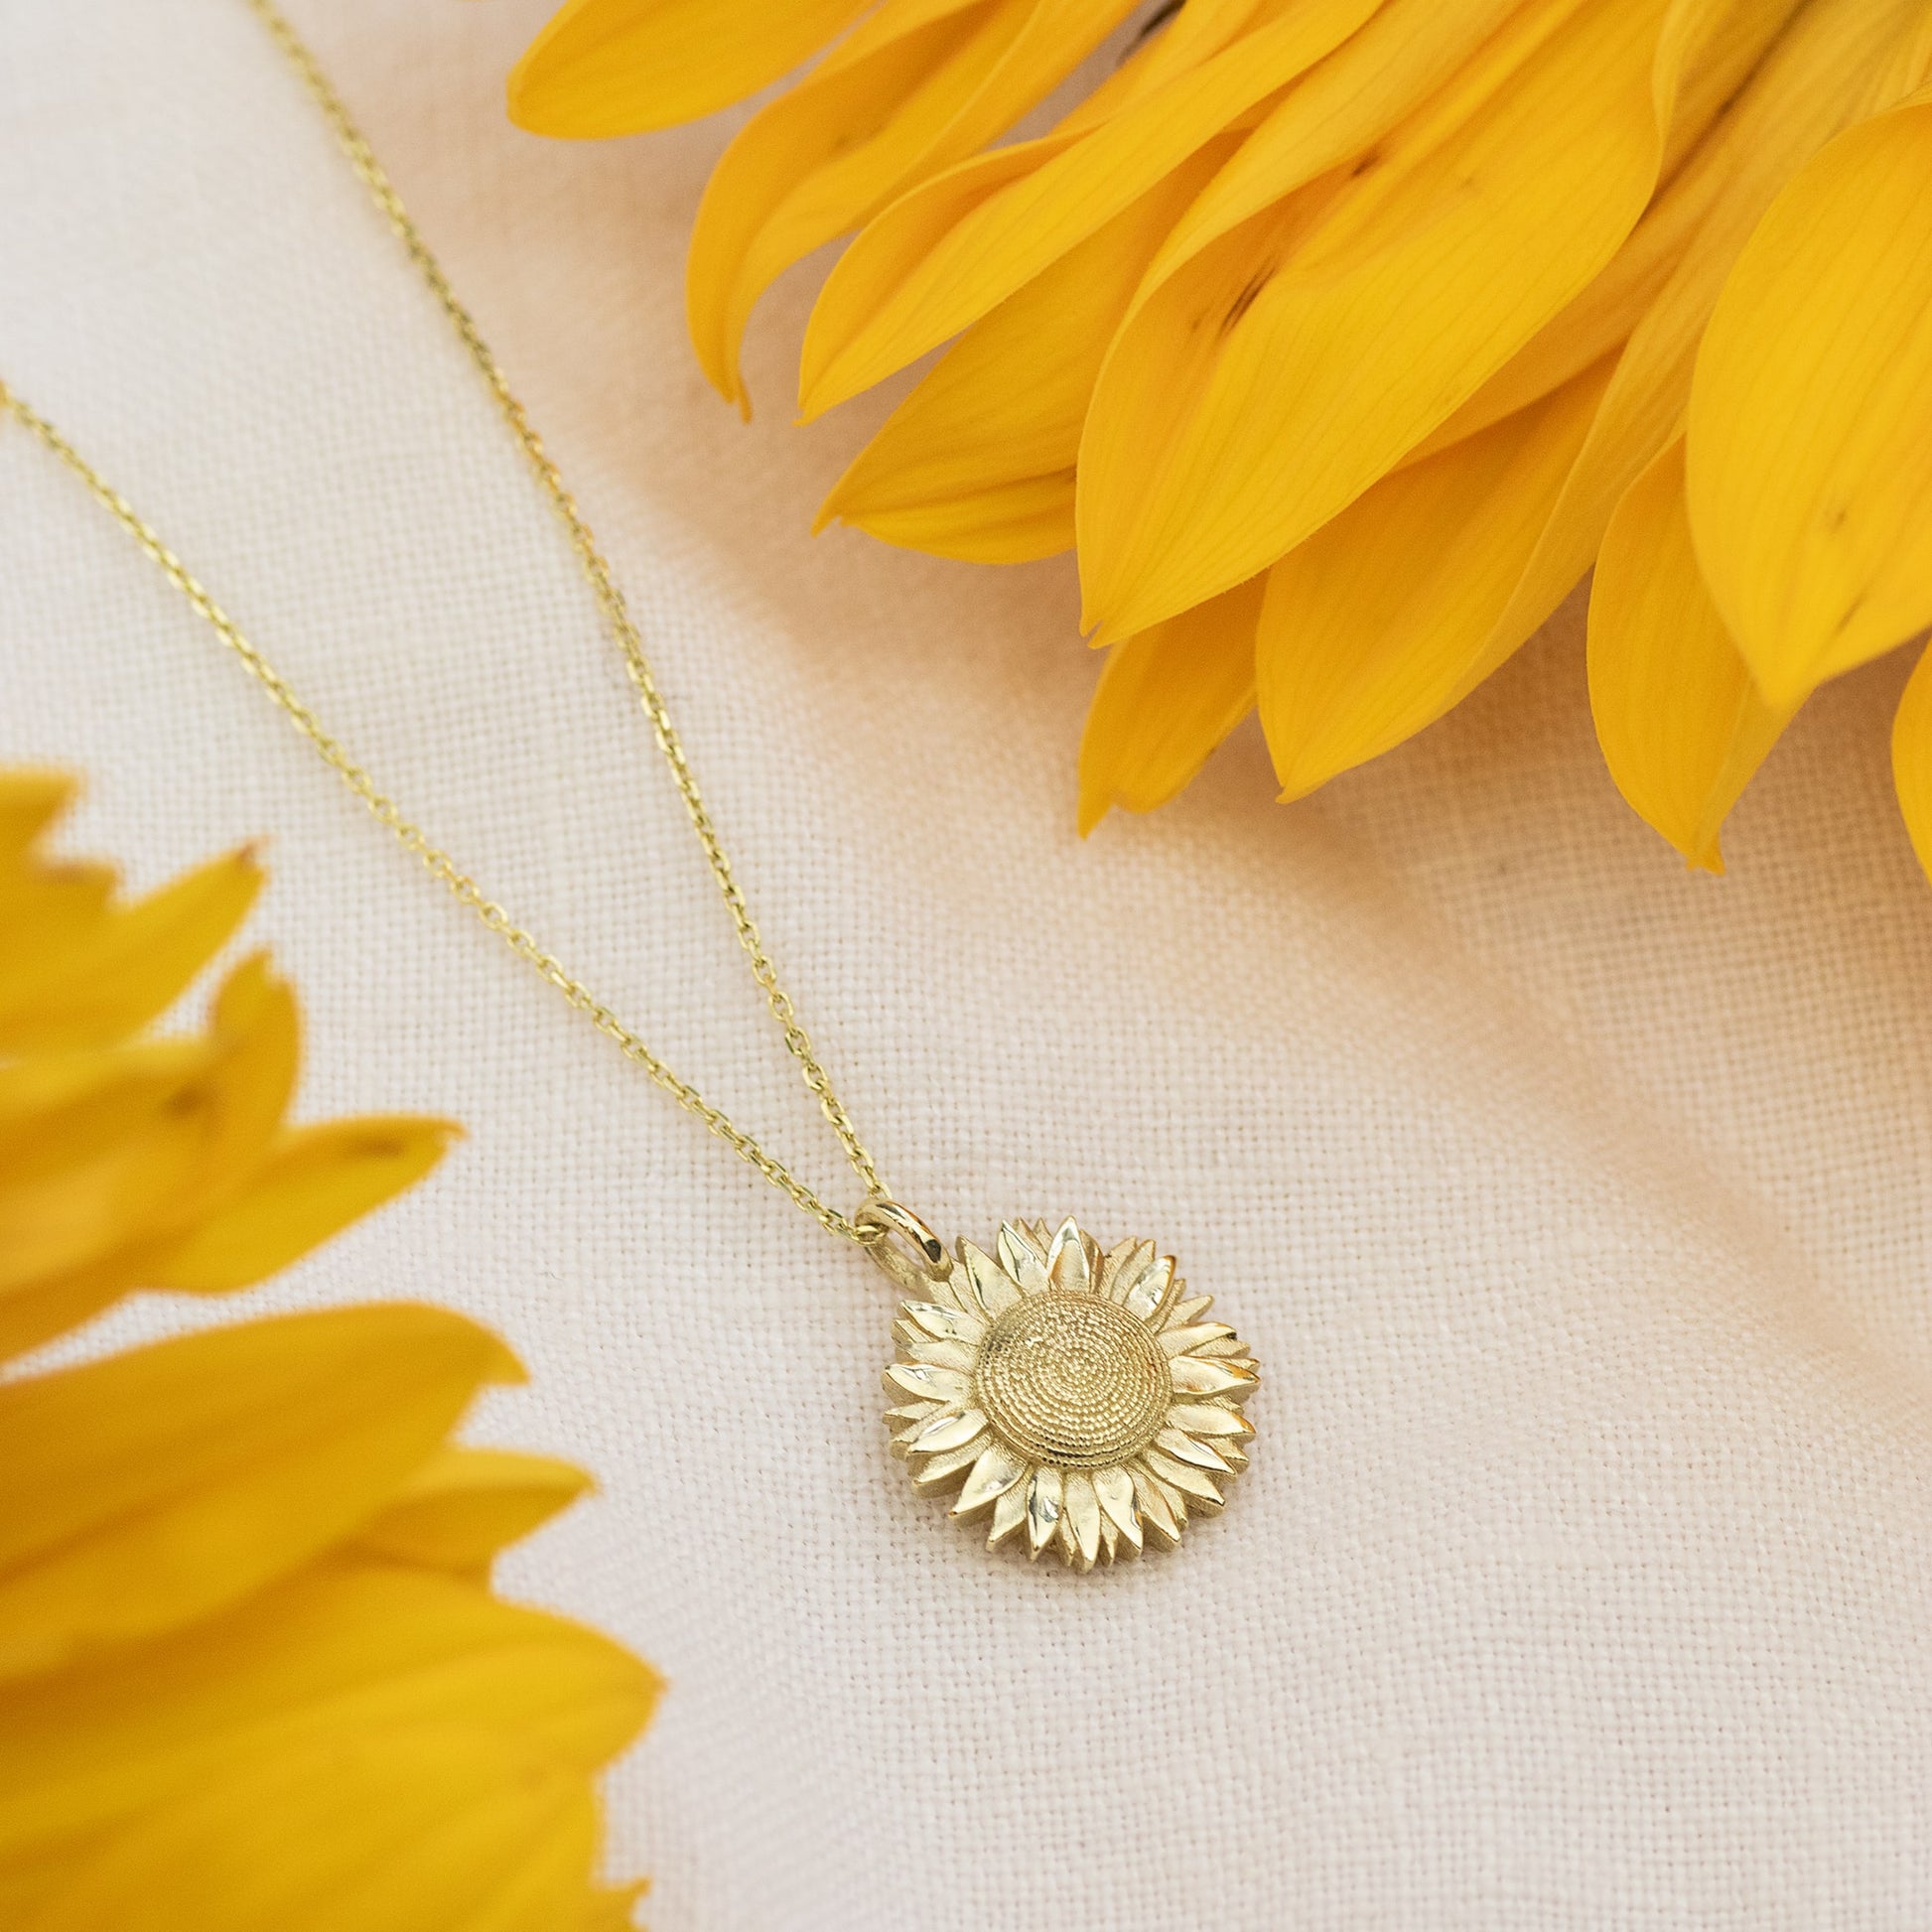 August Birth Flower Necklace - Sunflower - 9kt Gold